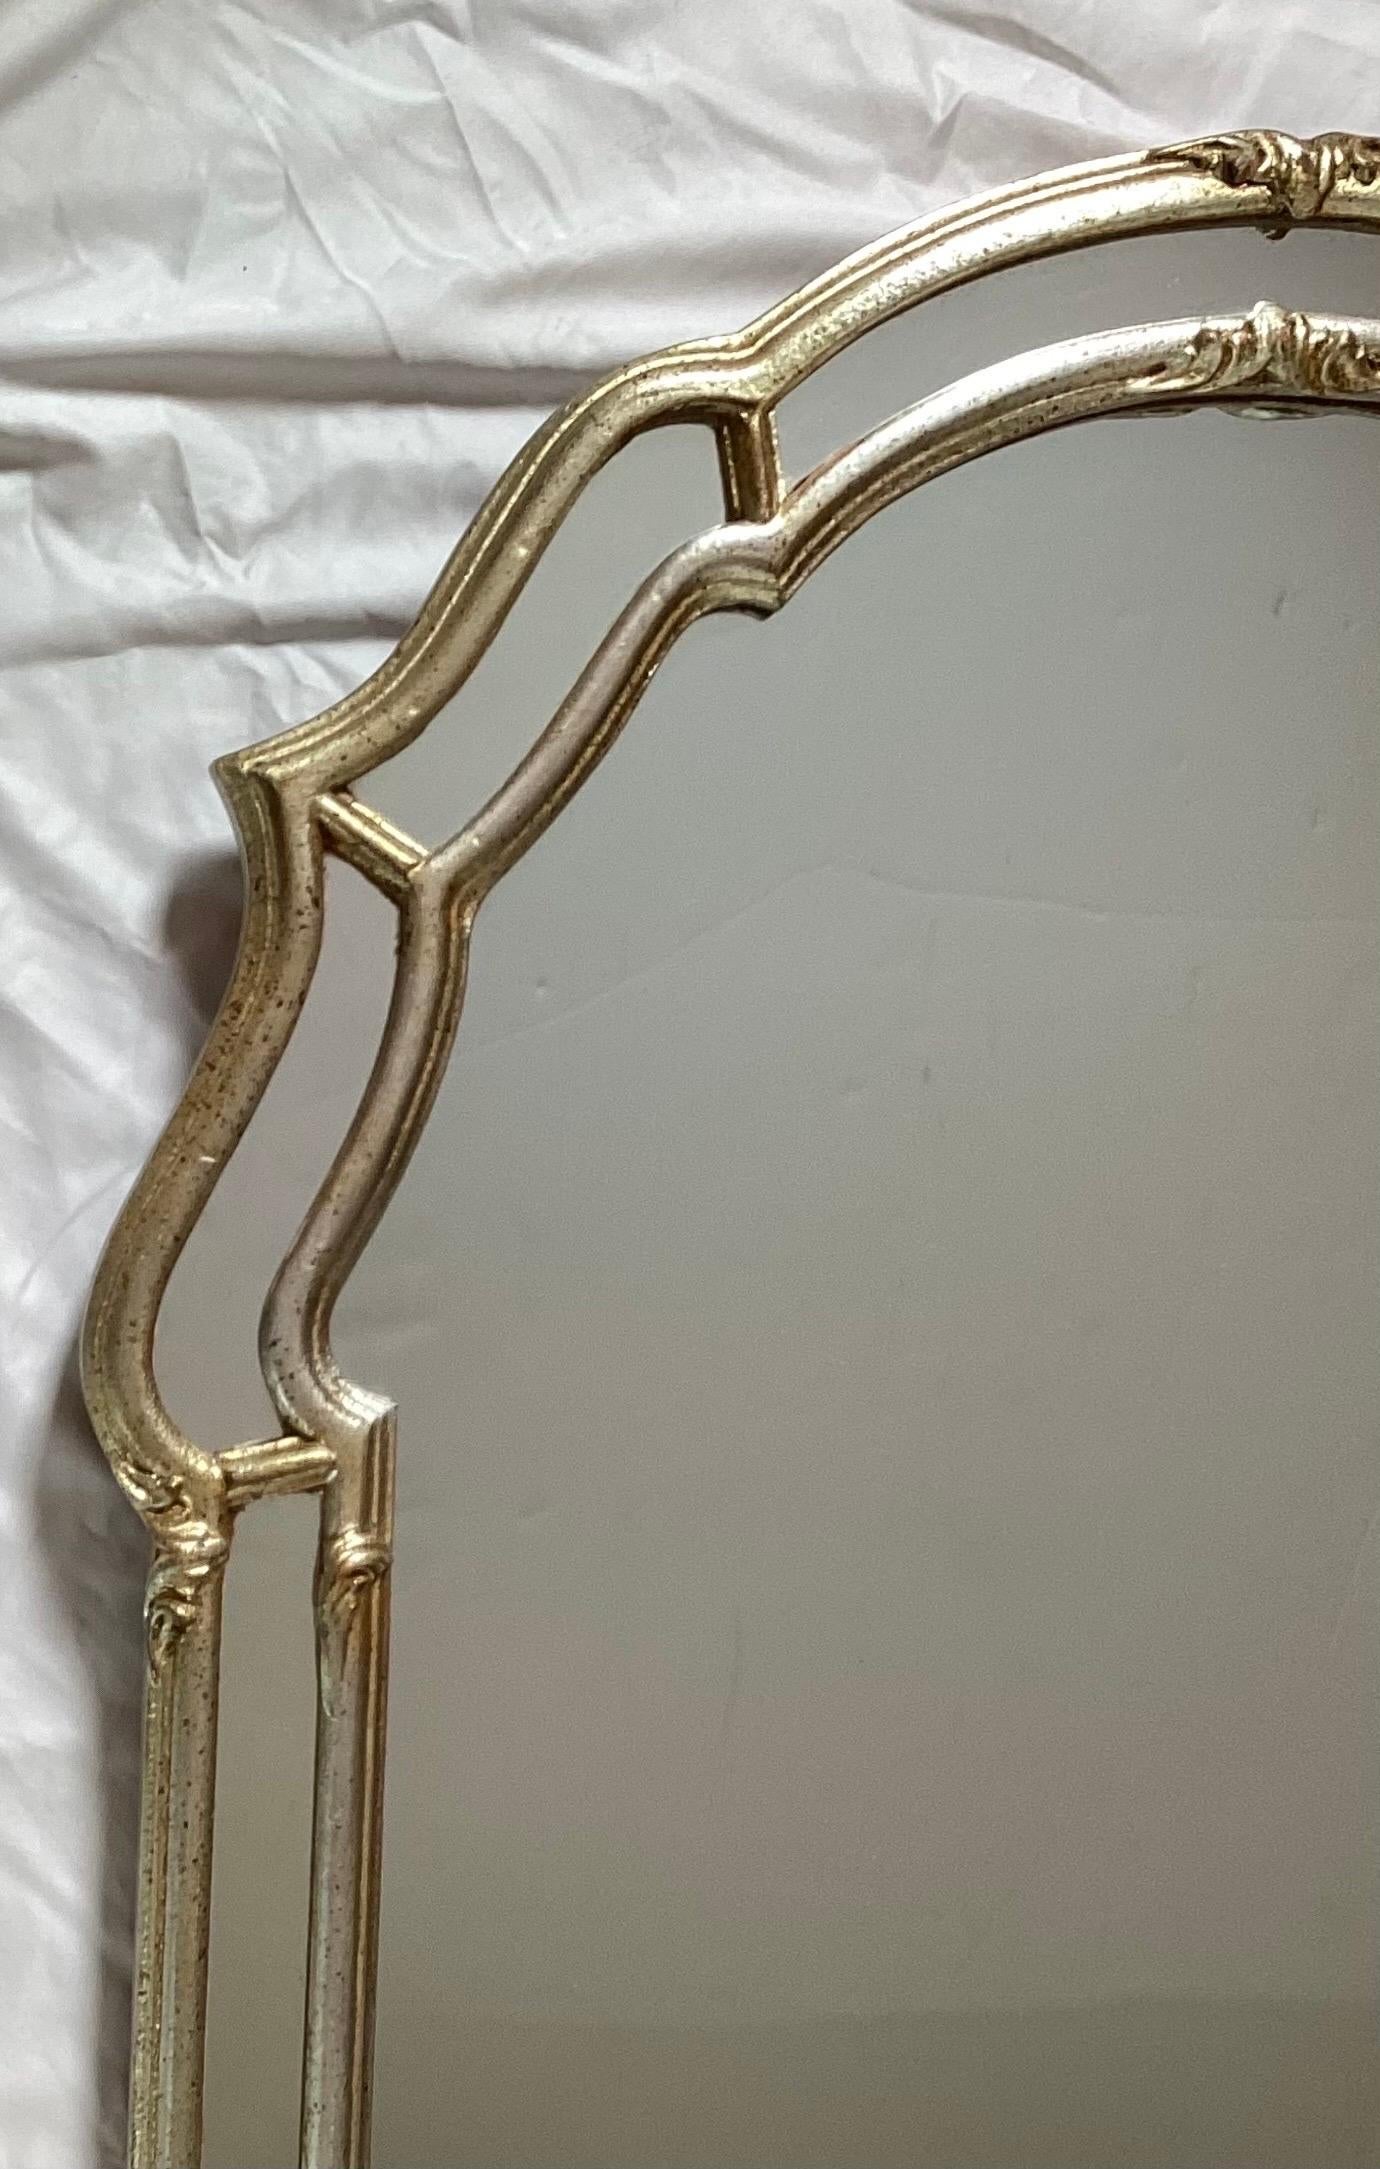 Schöne Mitte des Jahrhunderts Silber vergoldet Hollywood Regency Stil Spiegel
In sehr gutem Originalzustand, einbaufertig